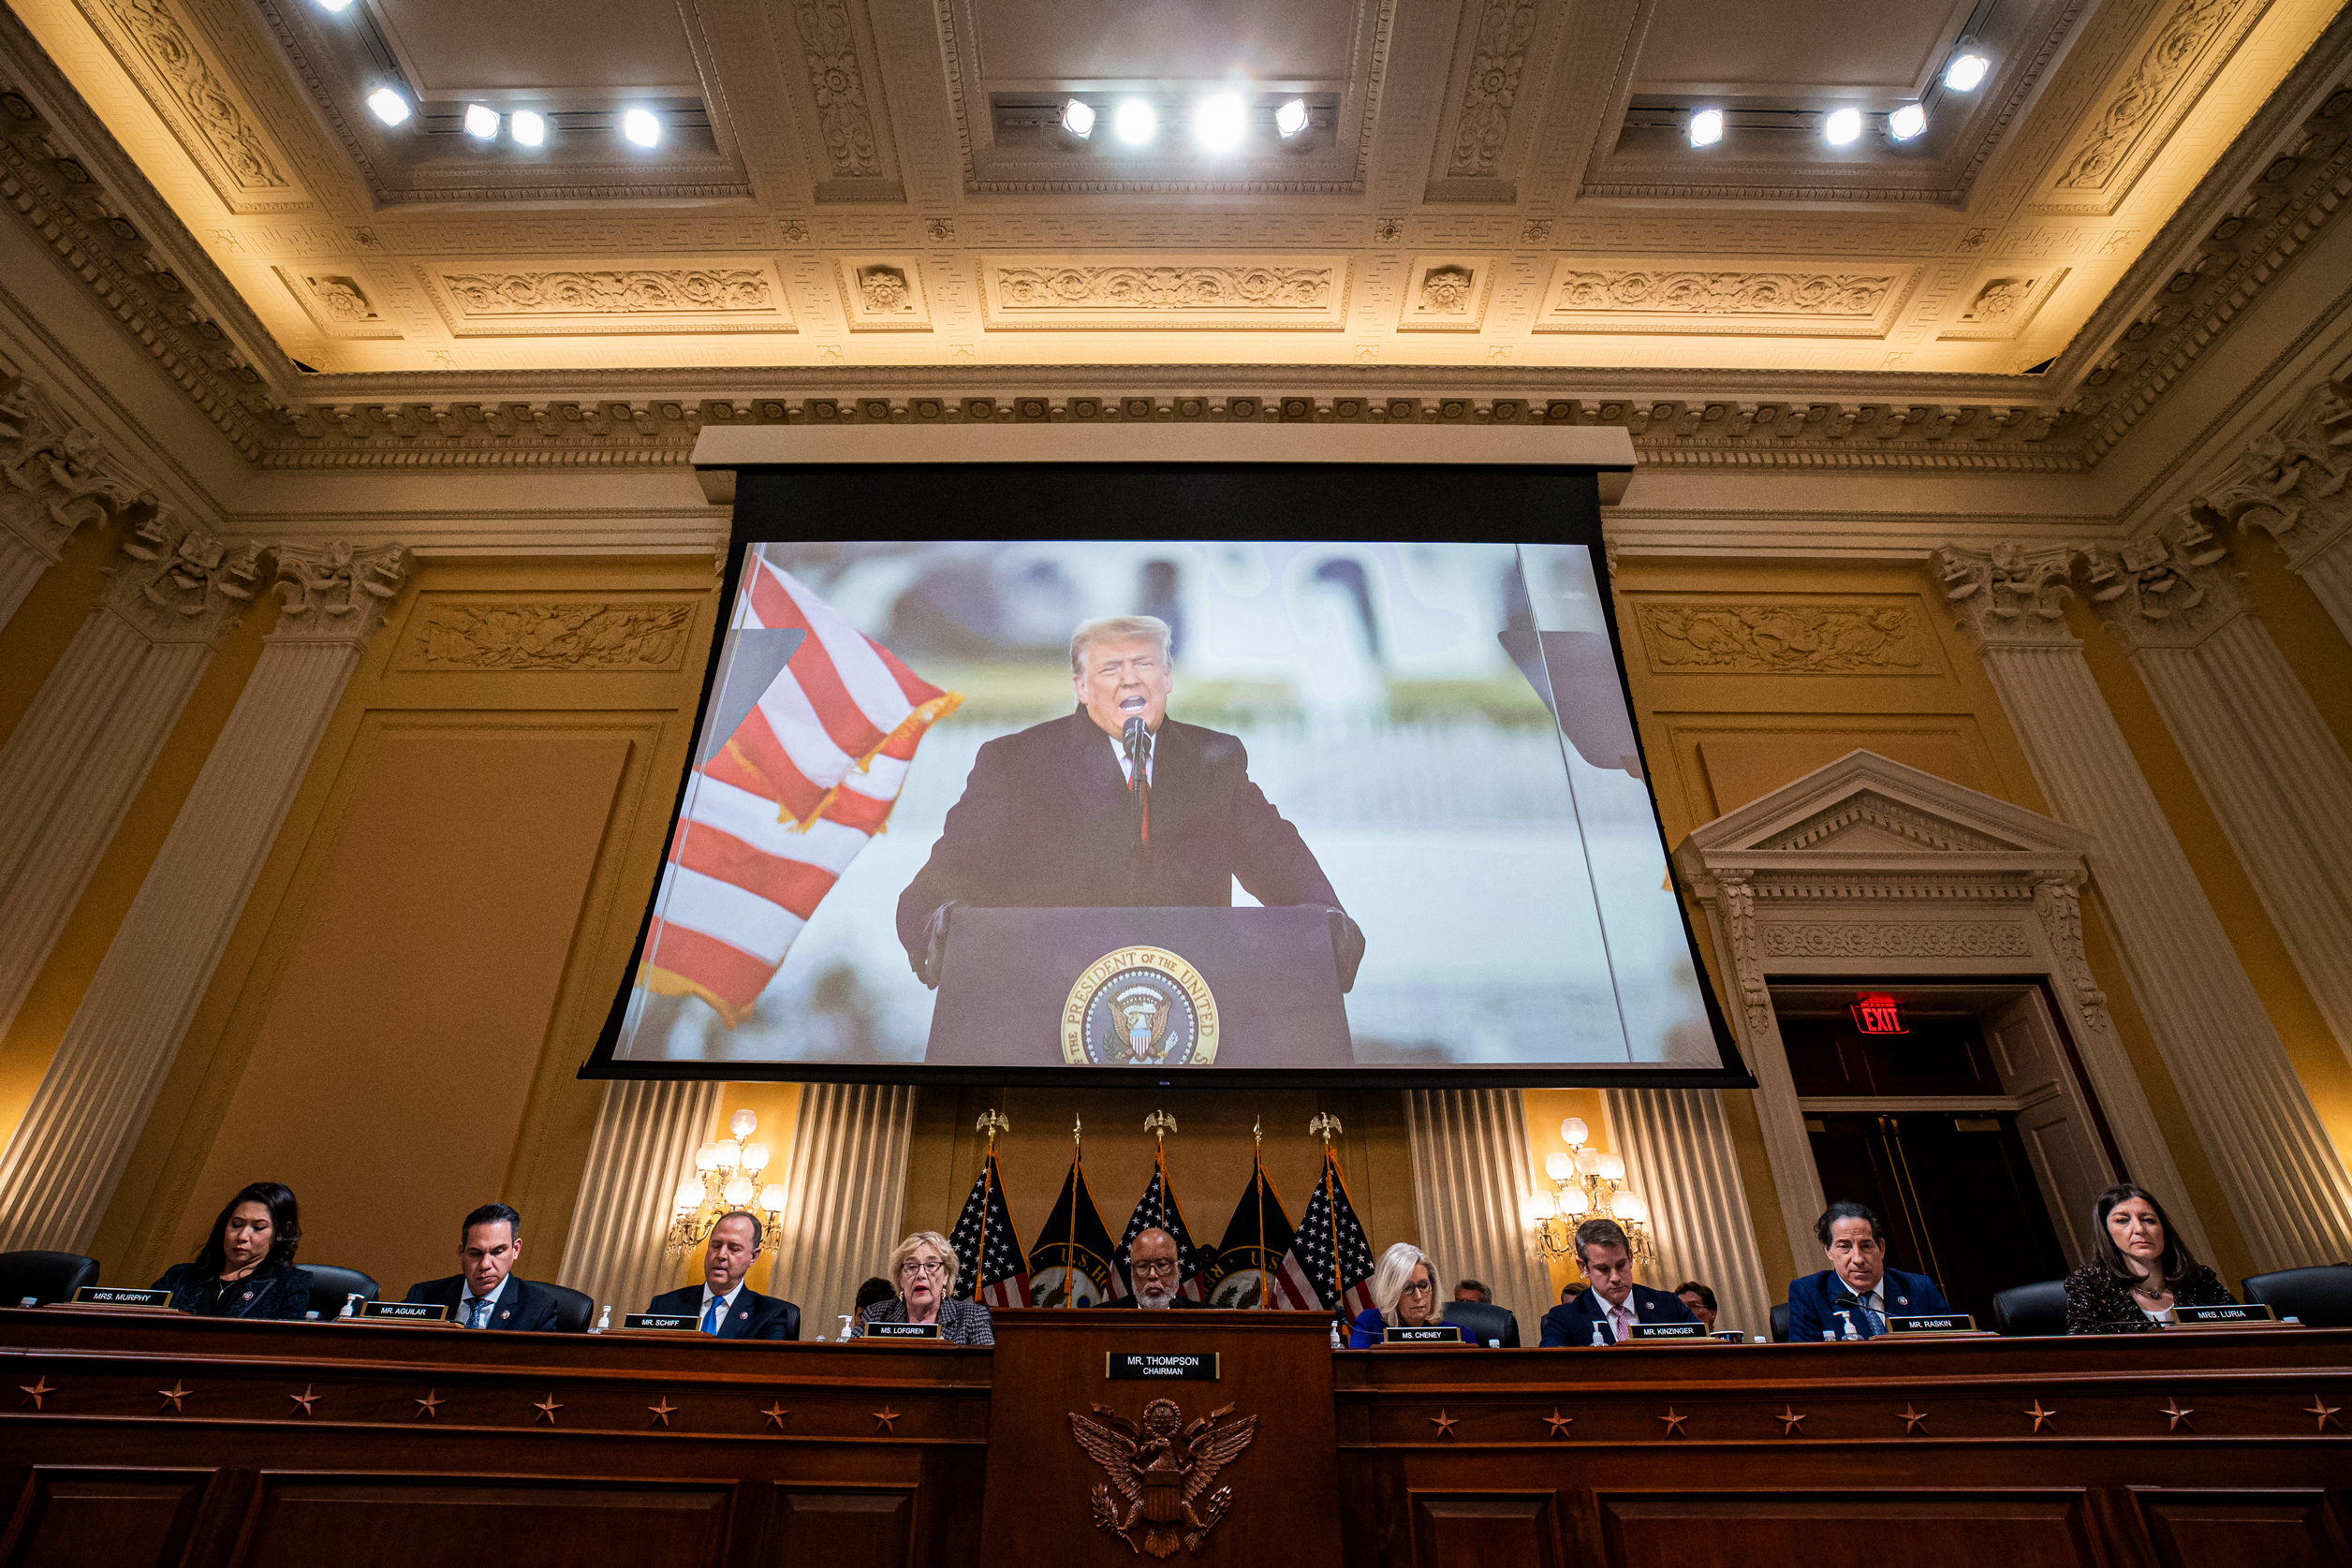 Hình ảnh của cựu Tổng thống Donald Trump xuất hiện trên màn hình trong cuộc họp của Ủy ban Đặc biệt Điều tra Vụ tấn công ngày 06/01 vào Tòa nhà Capitol Hoa Kỳ, tại Capitol Hill ở Hoa Thịnh Đốn, vào ngày 19/12/2022. (Ảnh: Al Drago/Getty Images)